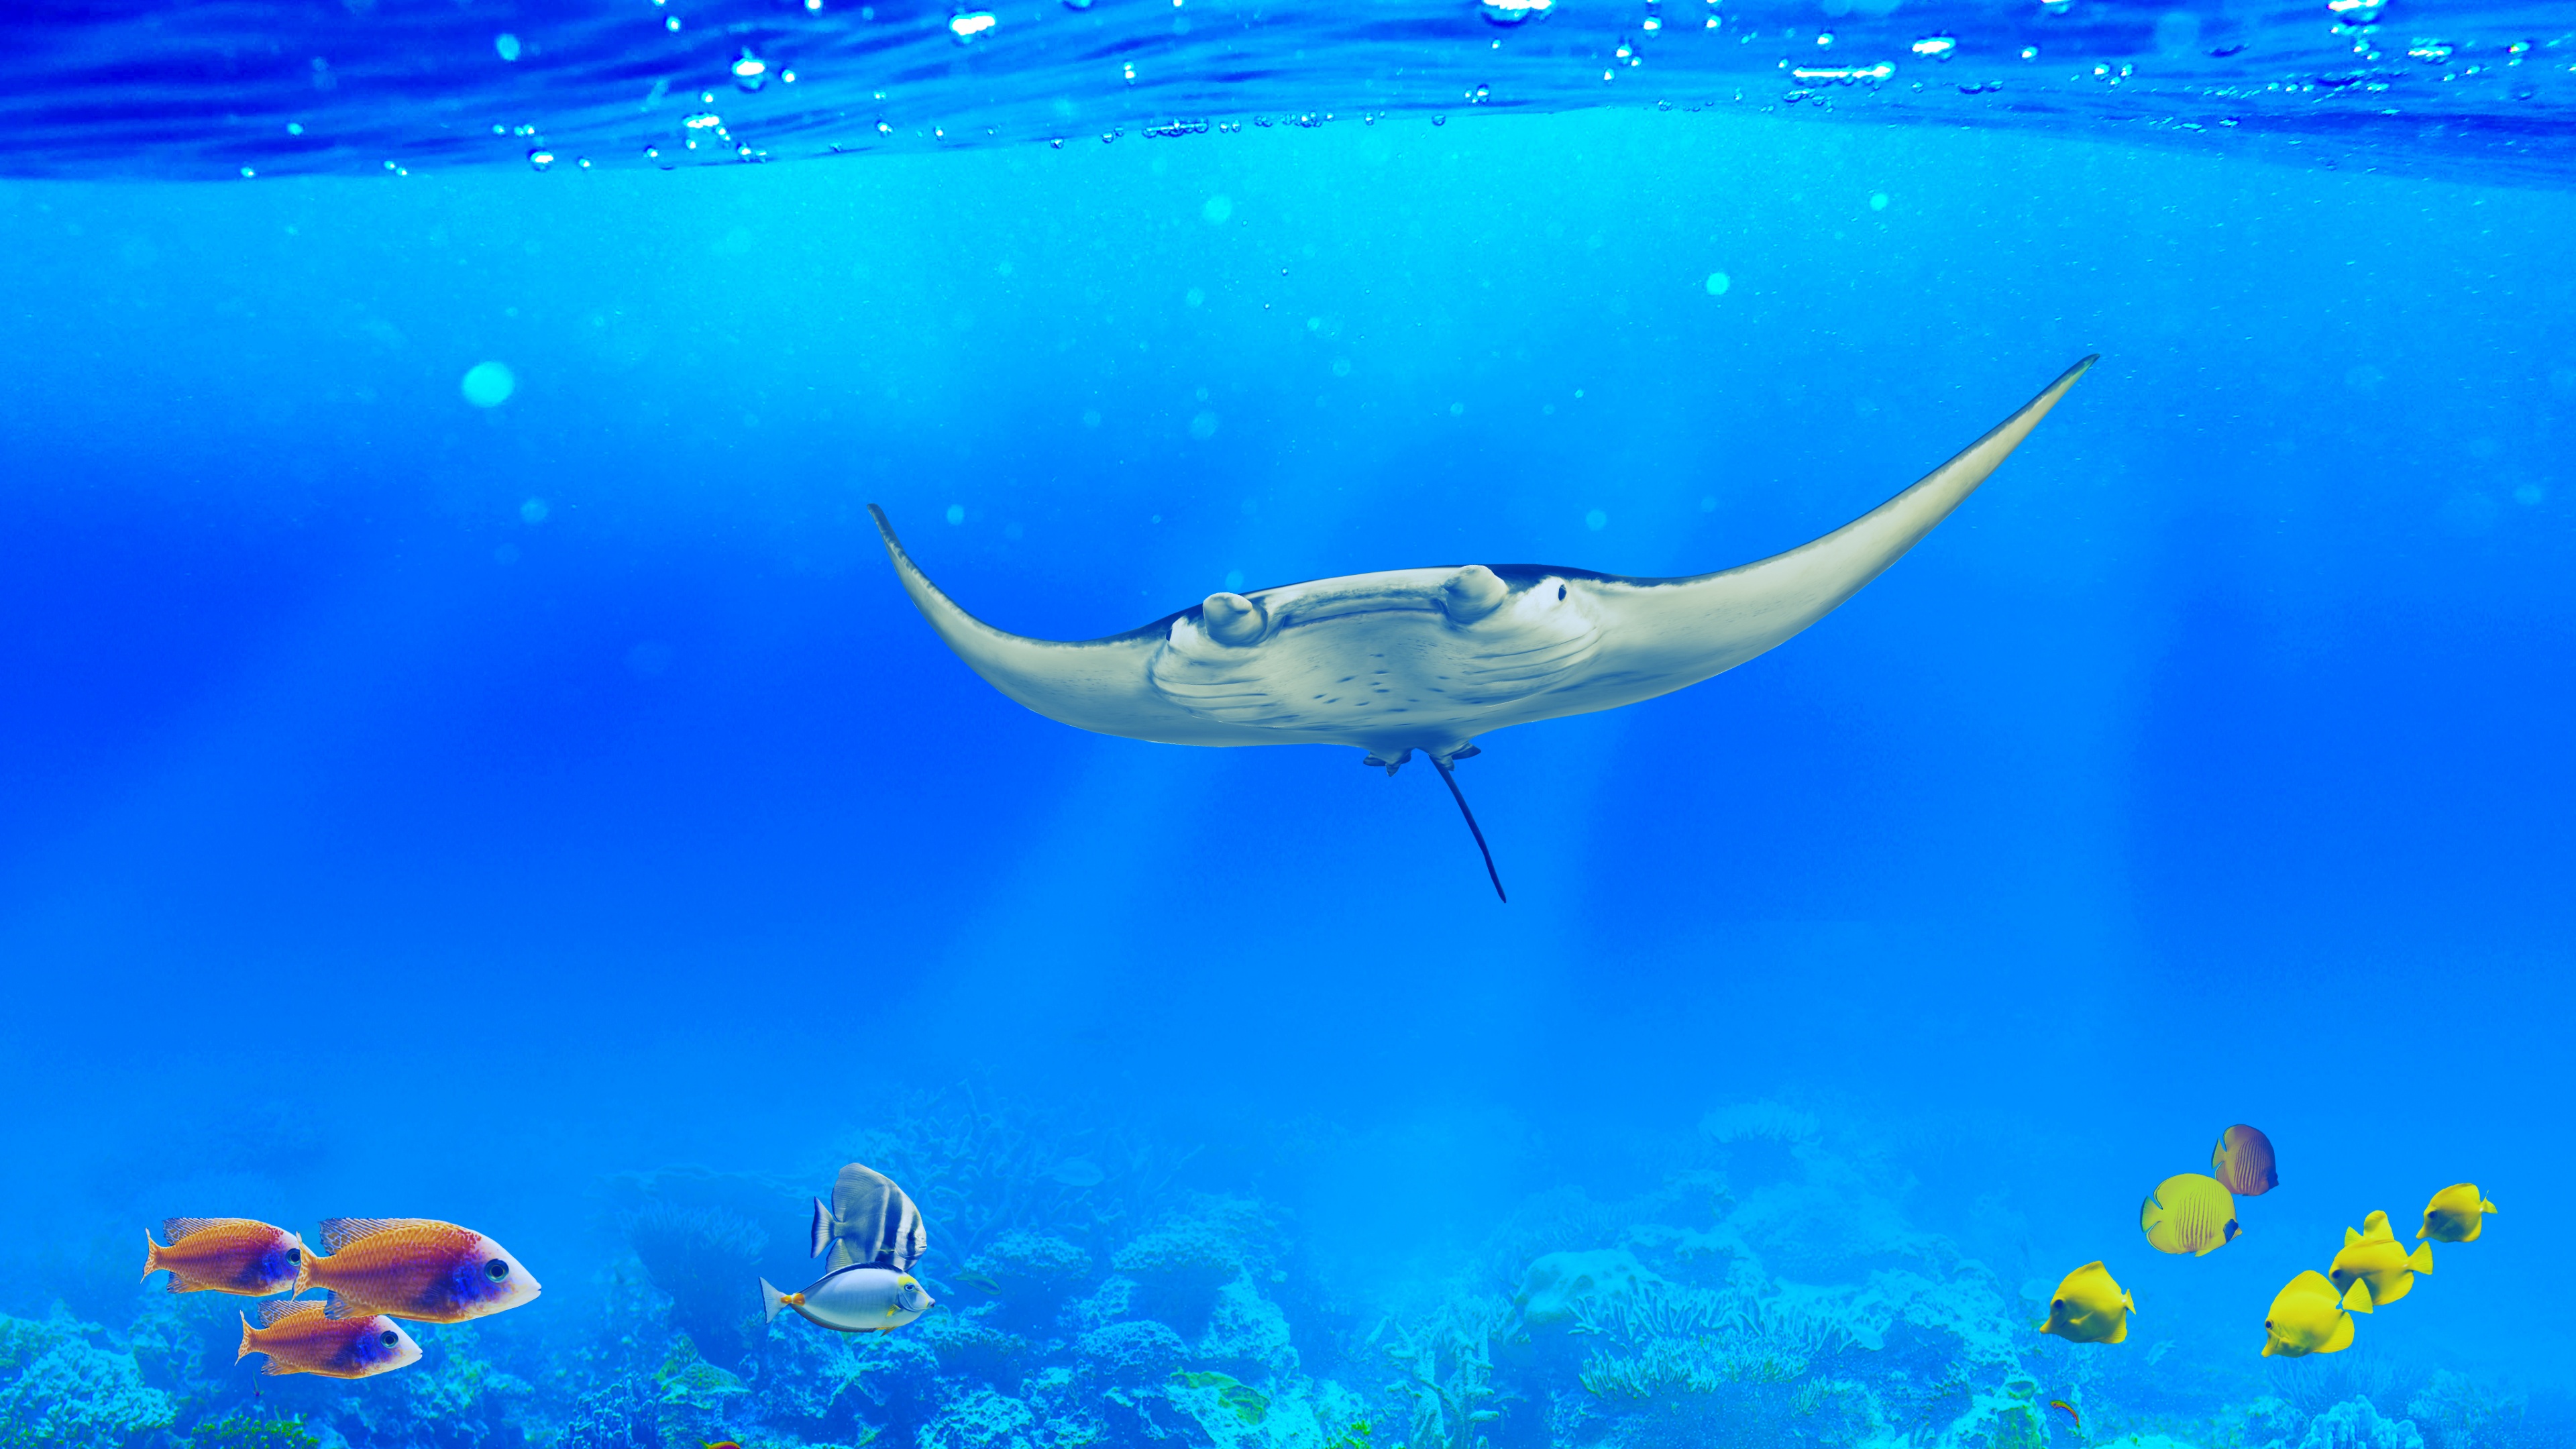 Manta ray Wallpaper 4K, Underwater, Ocean life, Animals, #9399